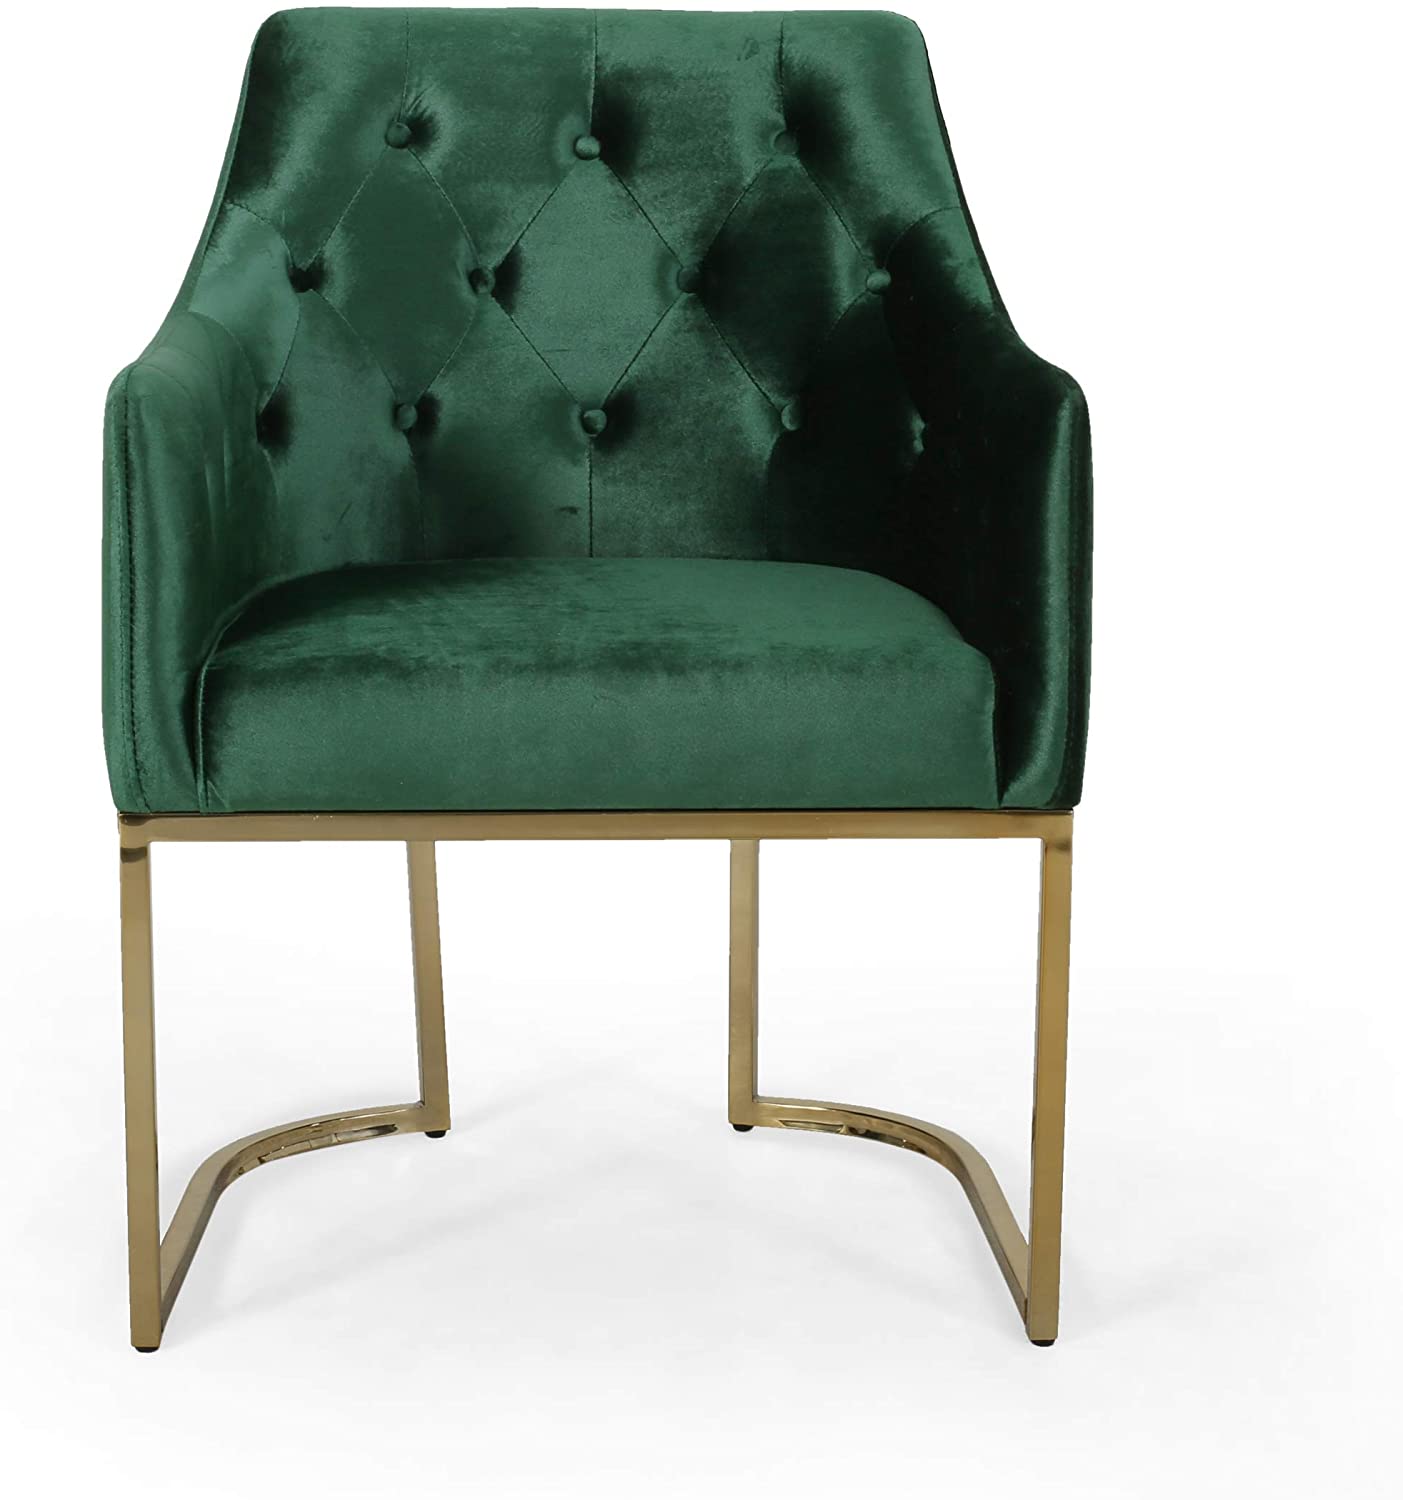 Green tufted velvet chair. 